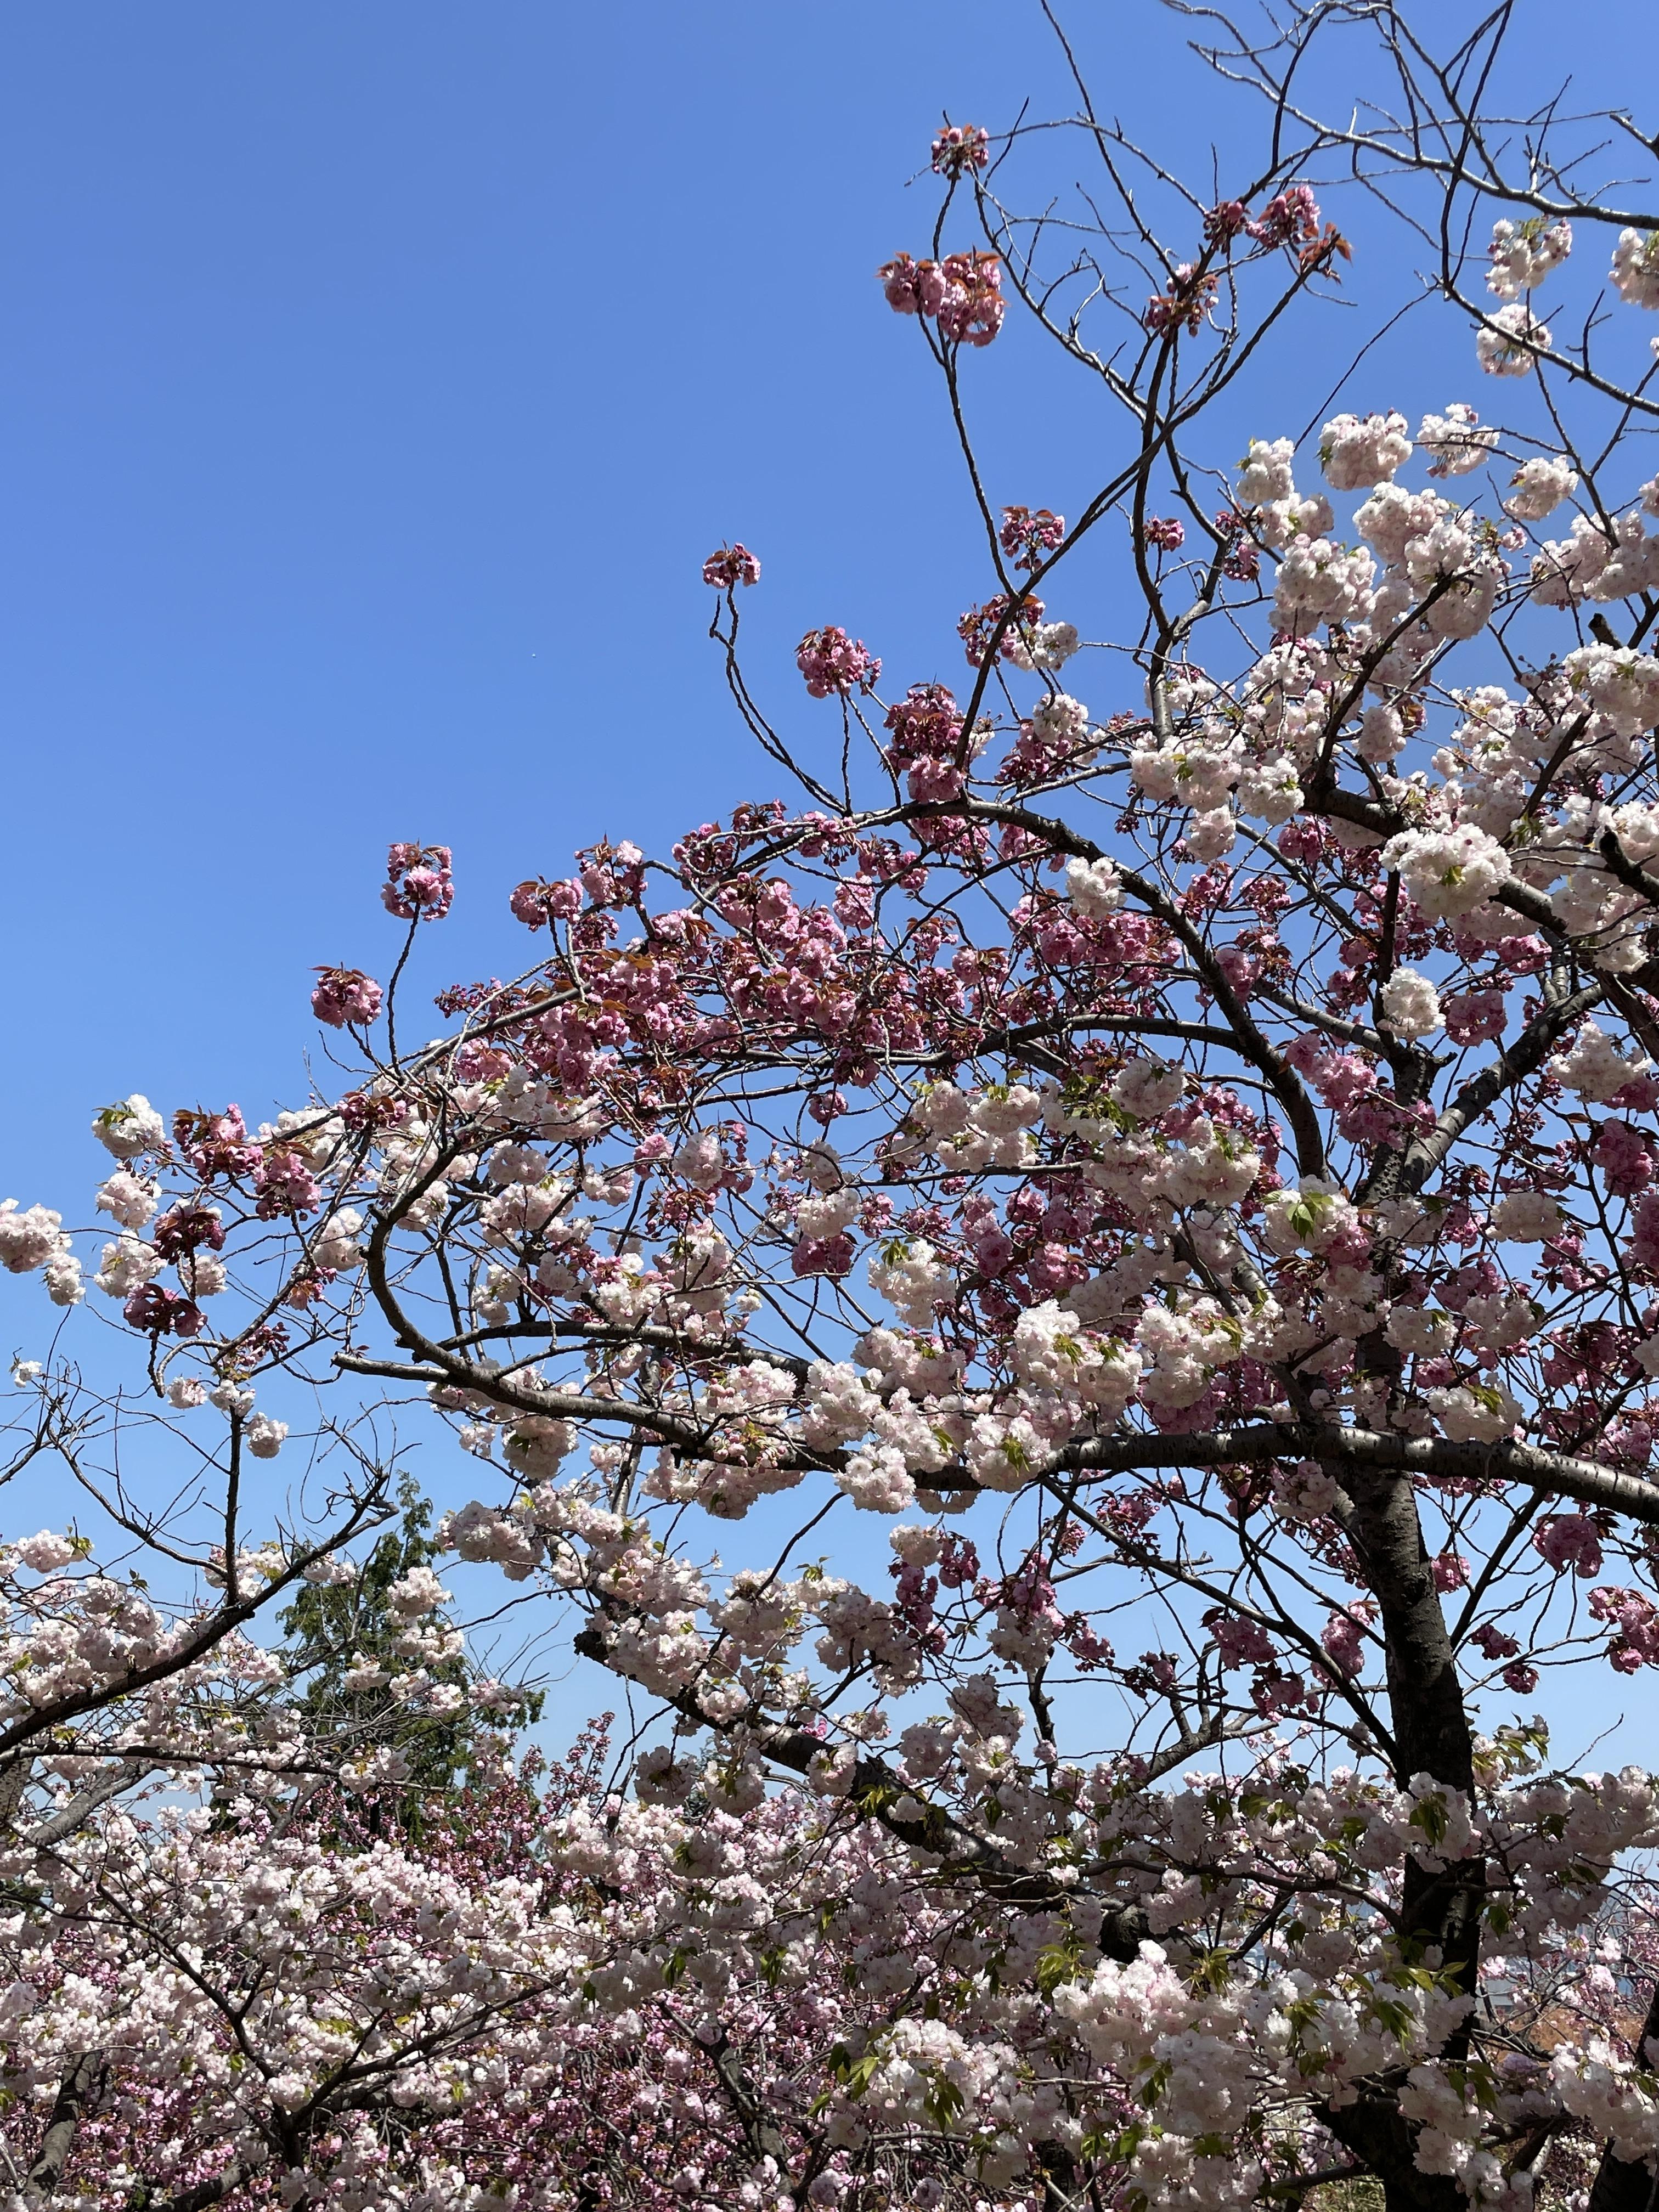 연분홍 겹벚꽃 & 진한 분홍 겹벚꽃